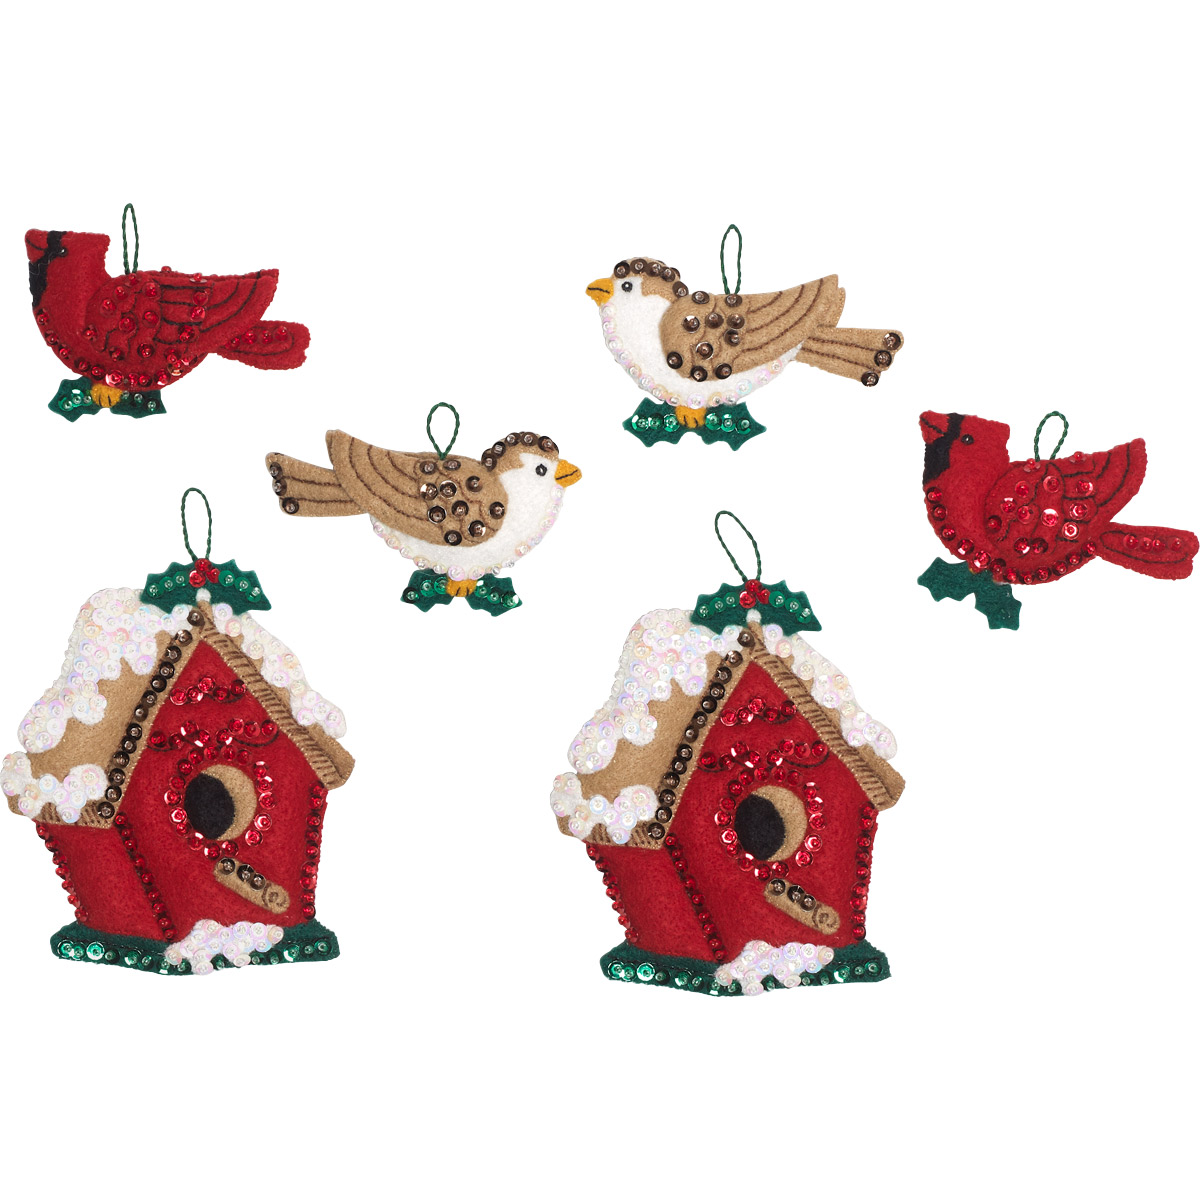 Shop Plaid Bucilla ® Seasonal - Felt - Ornament Kits - Festive Birds -  89449E - 89449E